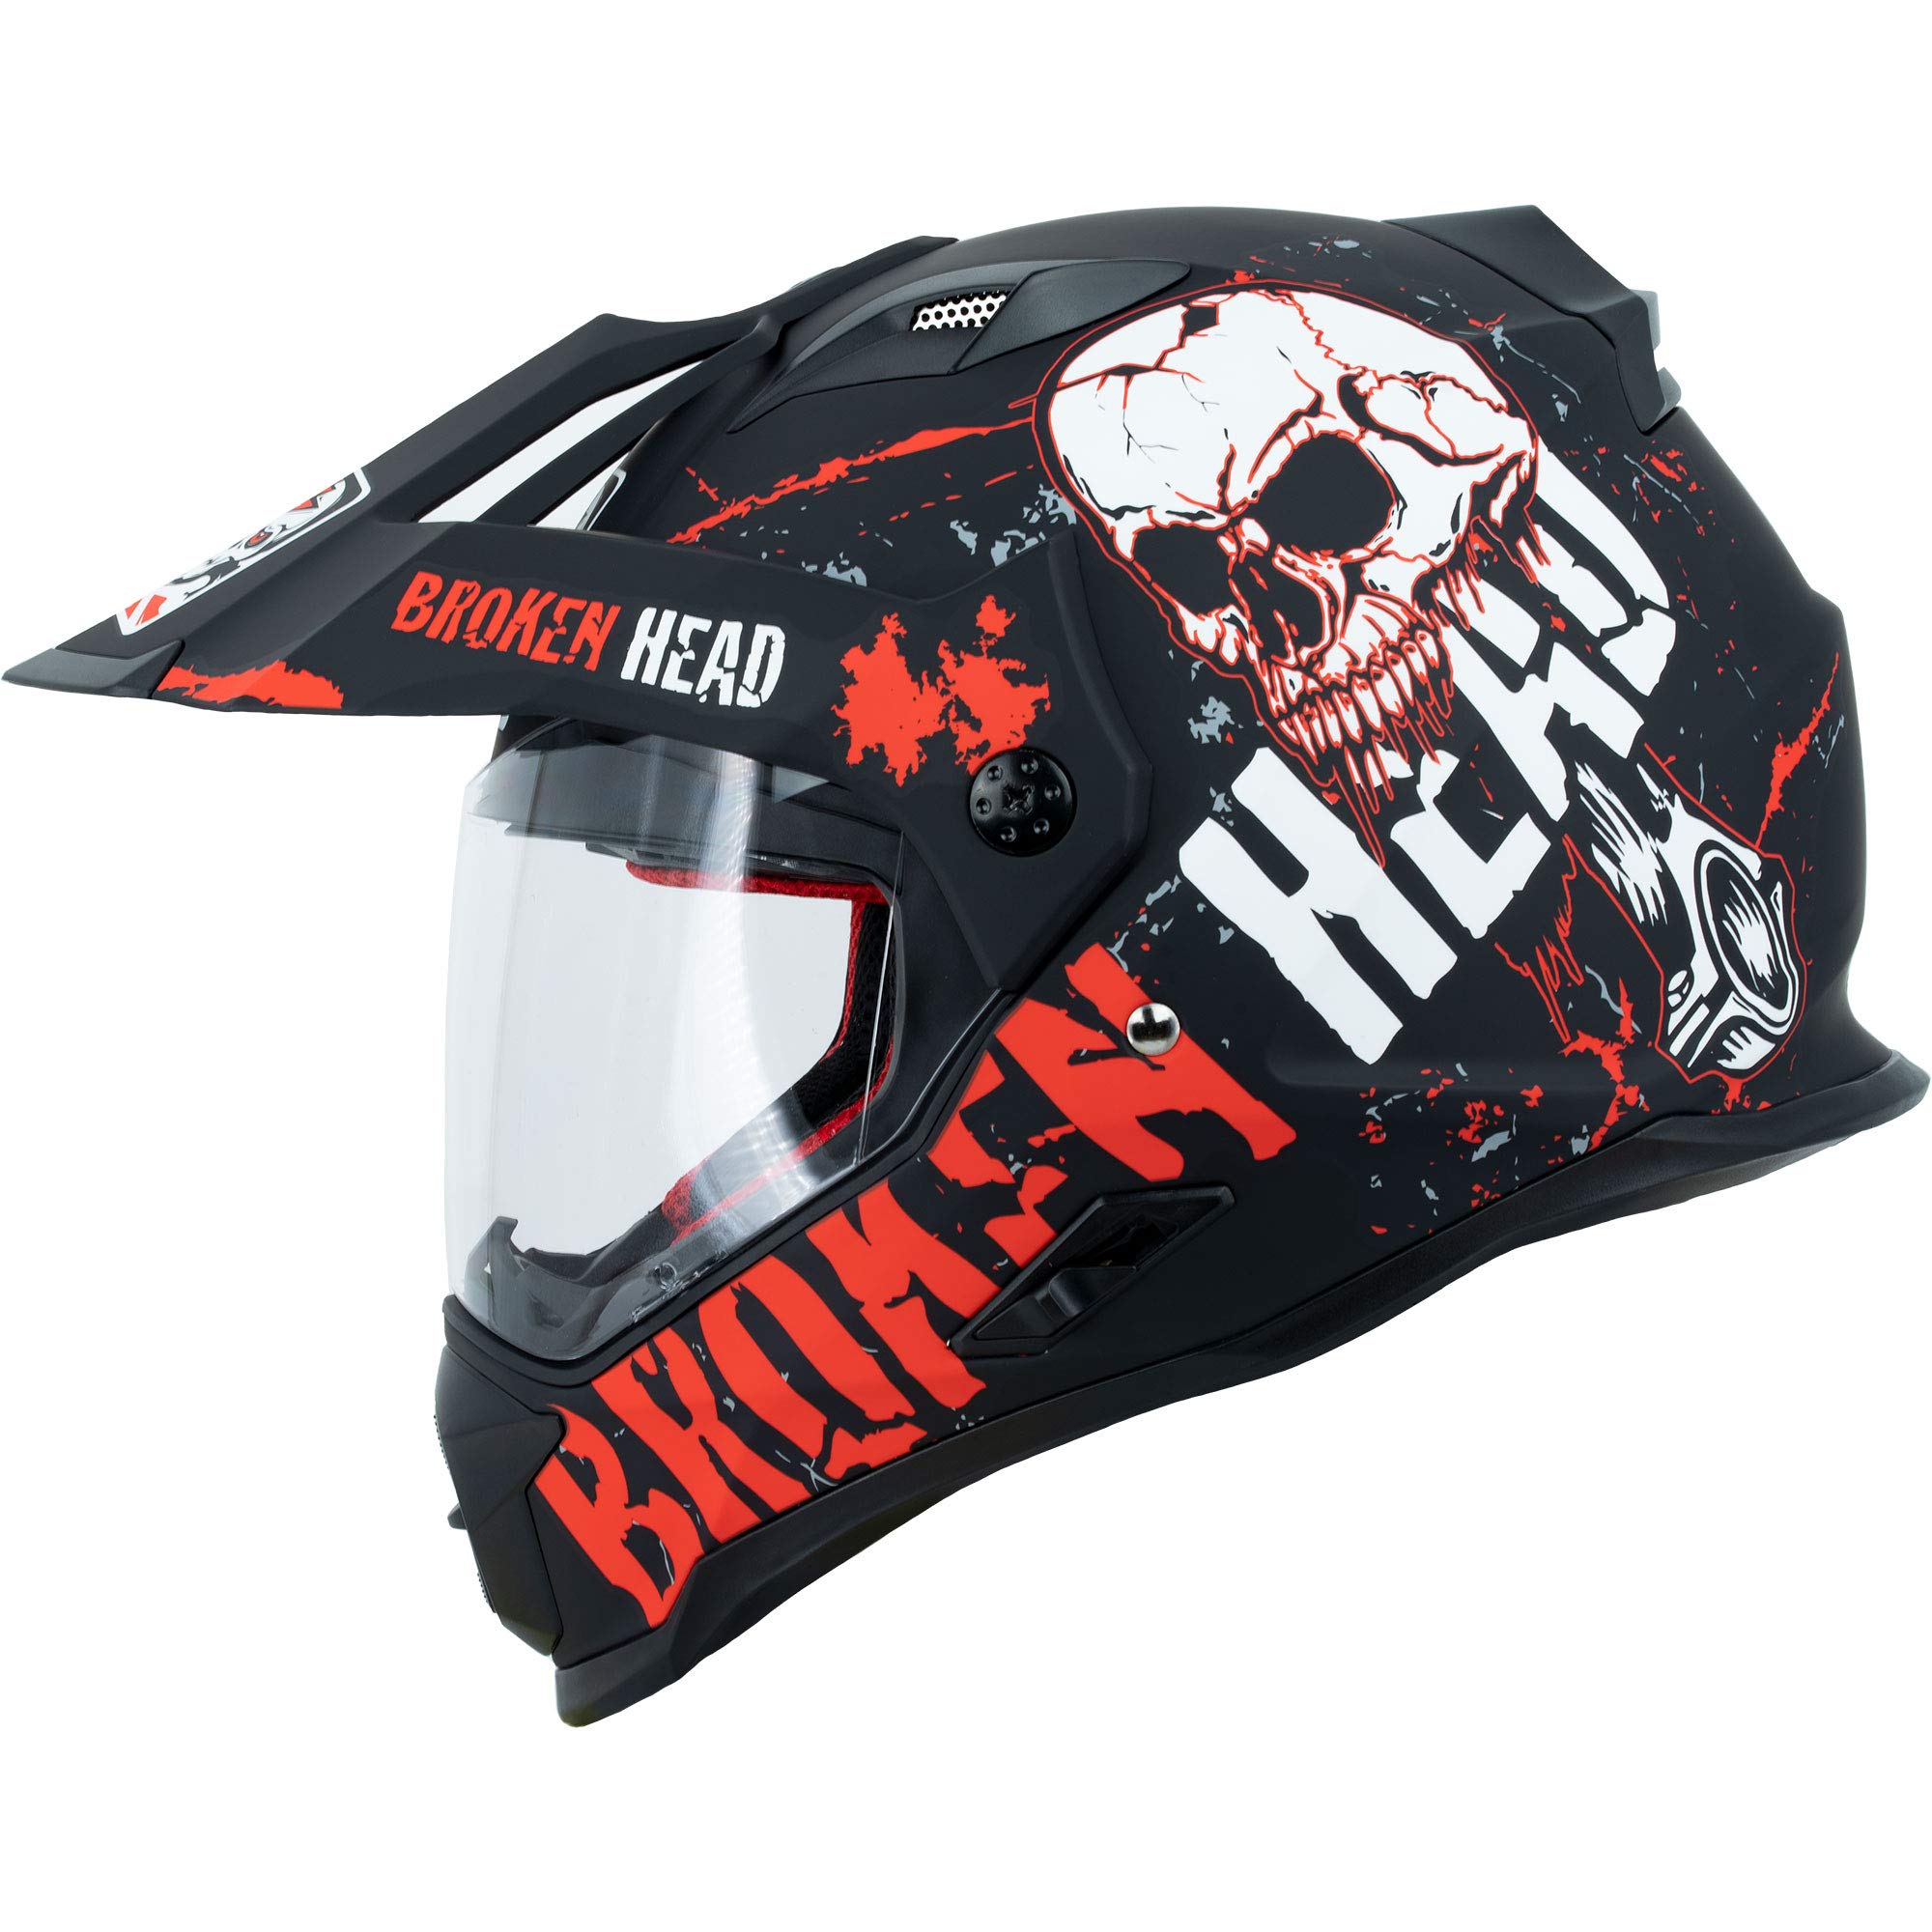 Broken Head Bone Crusher Motocross-Helm Rot mit Visier - Enduro MX Cross-Helm - Motorradhelm mit Sonnenblende (L 59-60 cm)